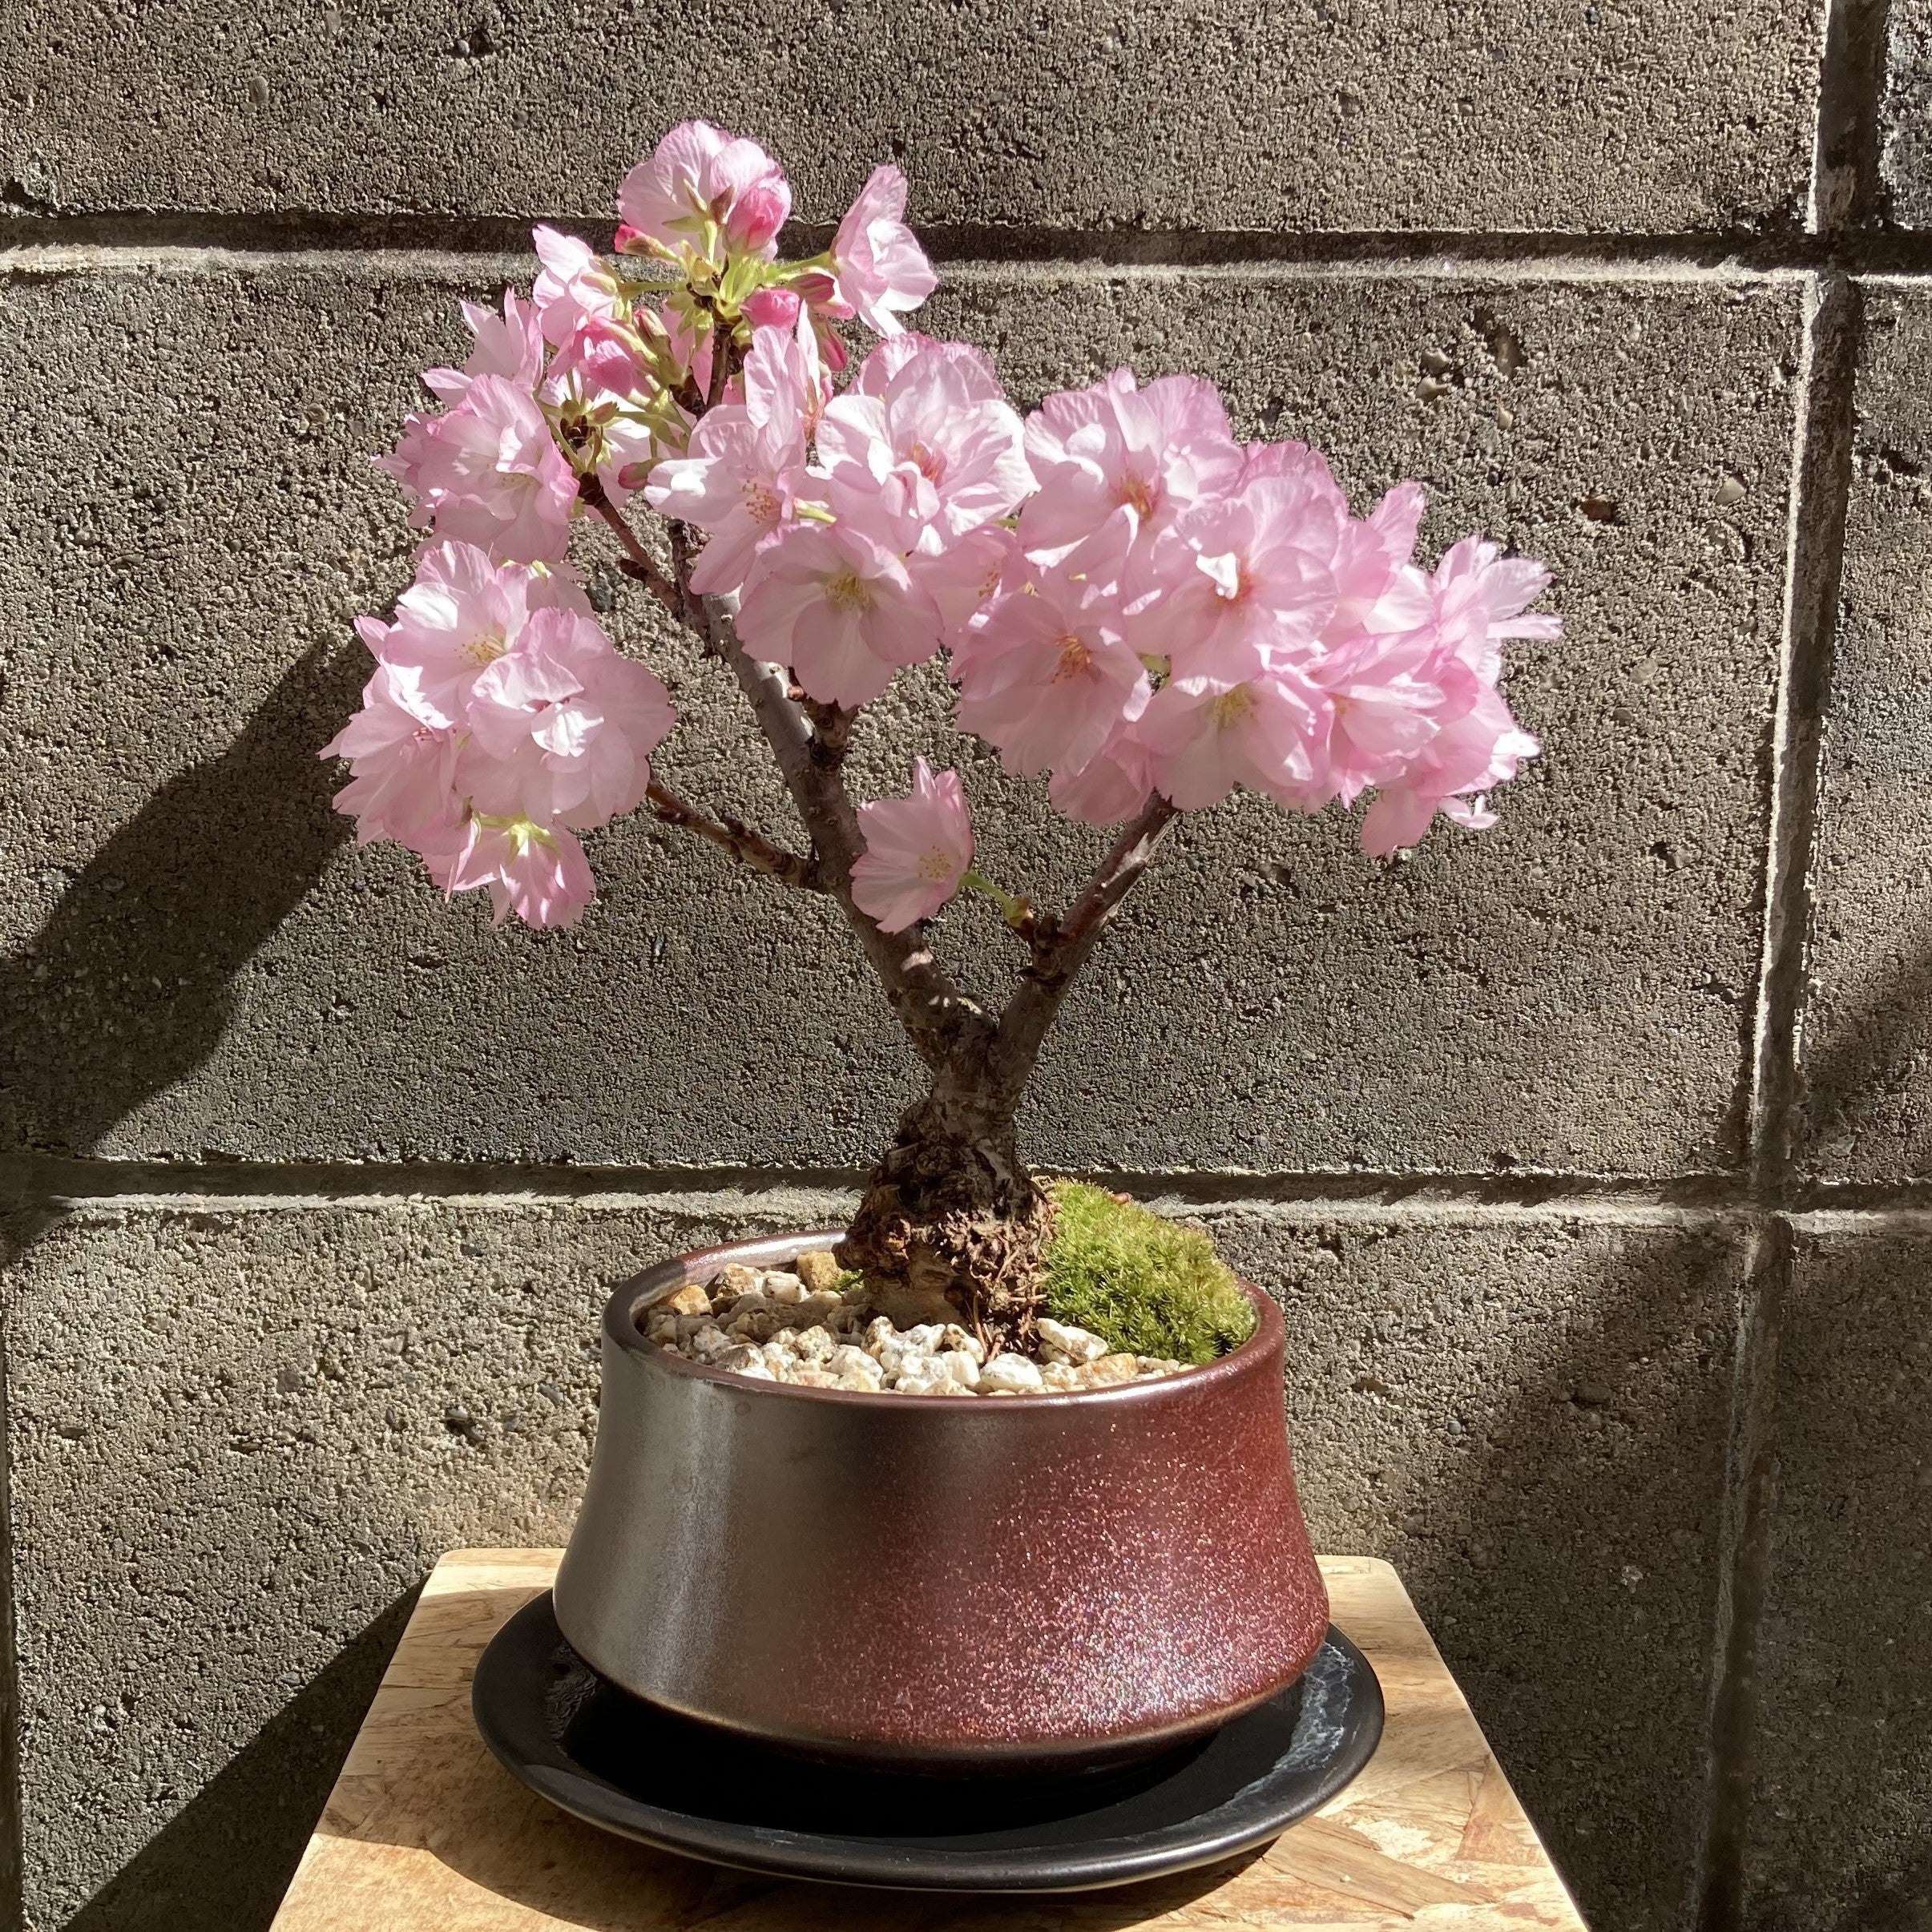 【申込受付中】旭山桜盆栽